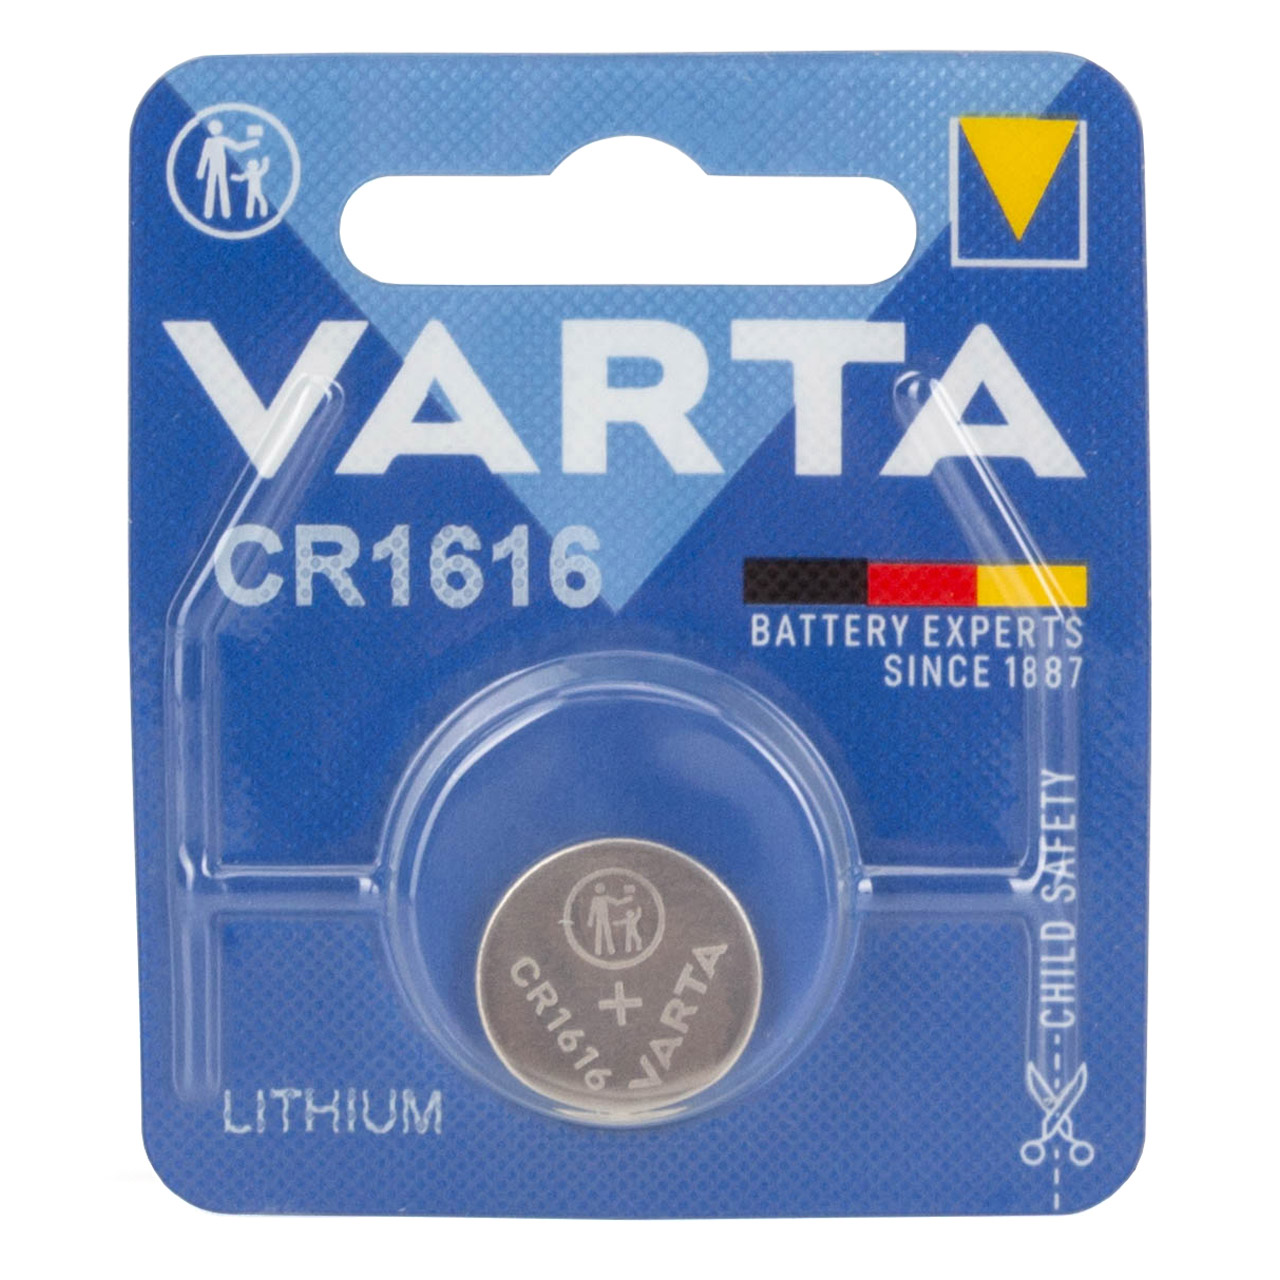 10x VARTA Lithium 3V CR1616 Knopfzelle Knopfbatterie Batterie (MHD 08.2032)